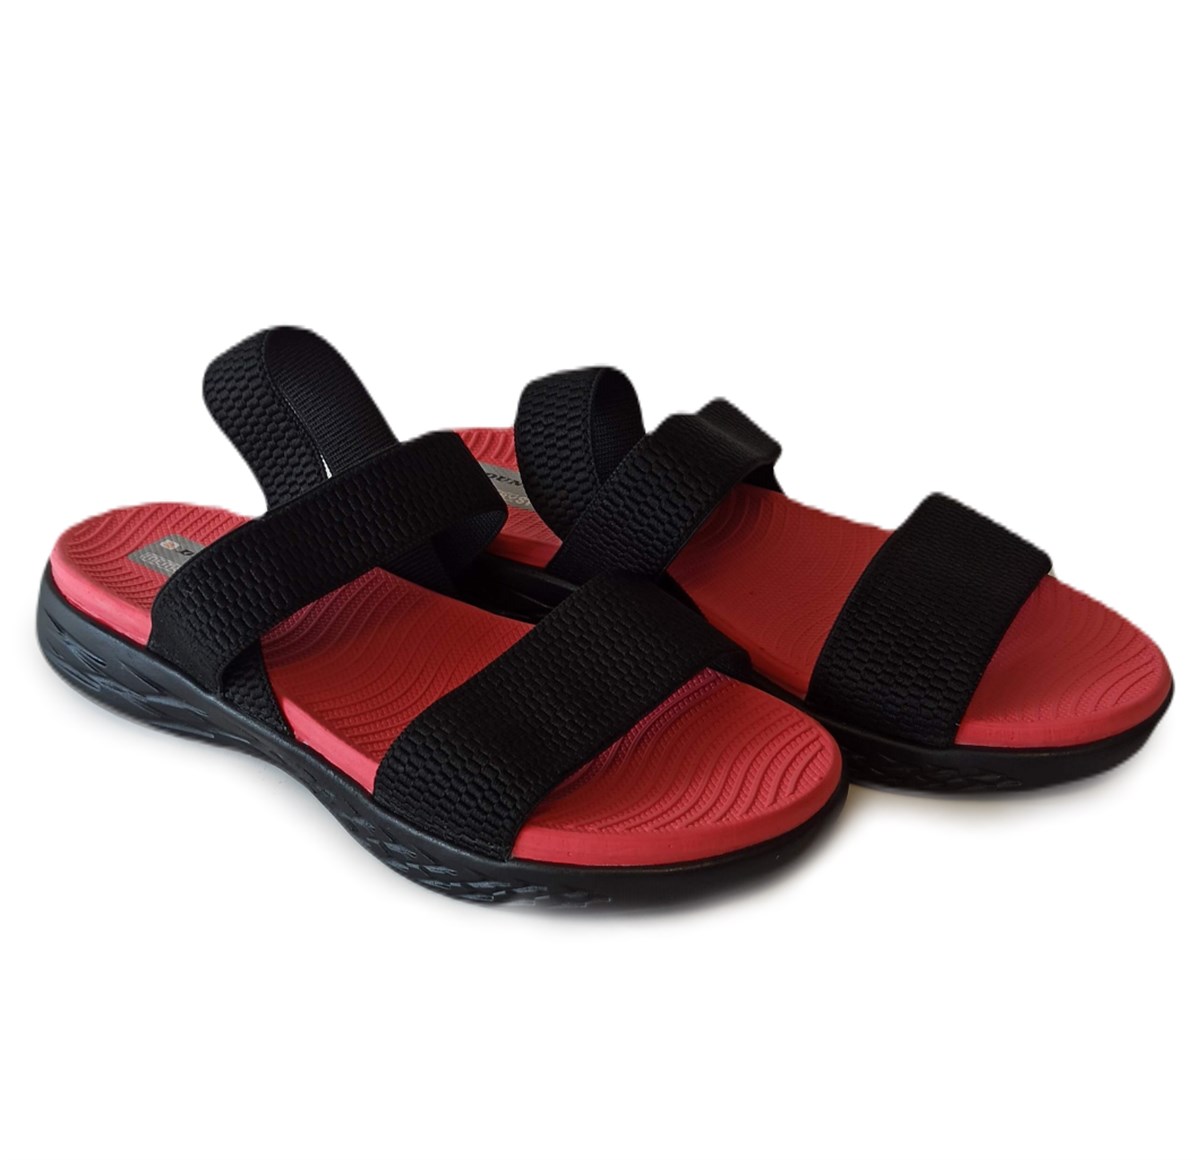 Dunlop Kadın Ortholite Taban Sandalet Lastikli Ayakkabı Siyah Kırmızı 1162  v1